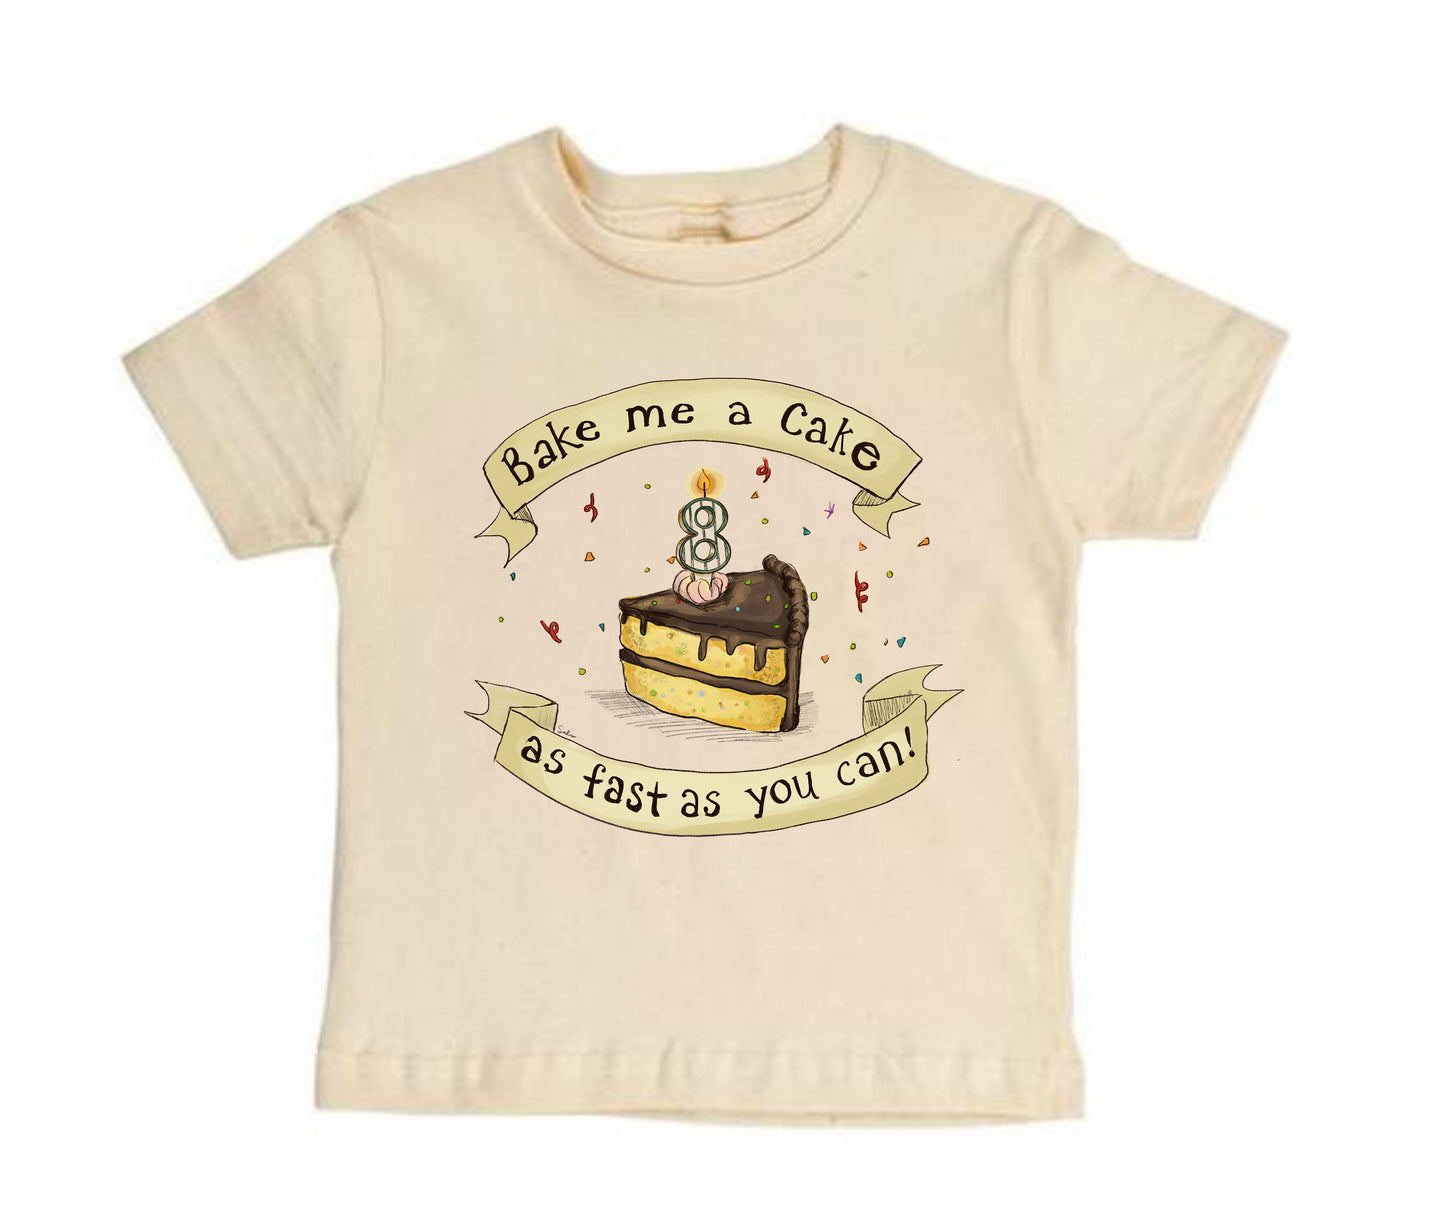 Bake Me a Cake! 8 [Toddler Tee]